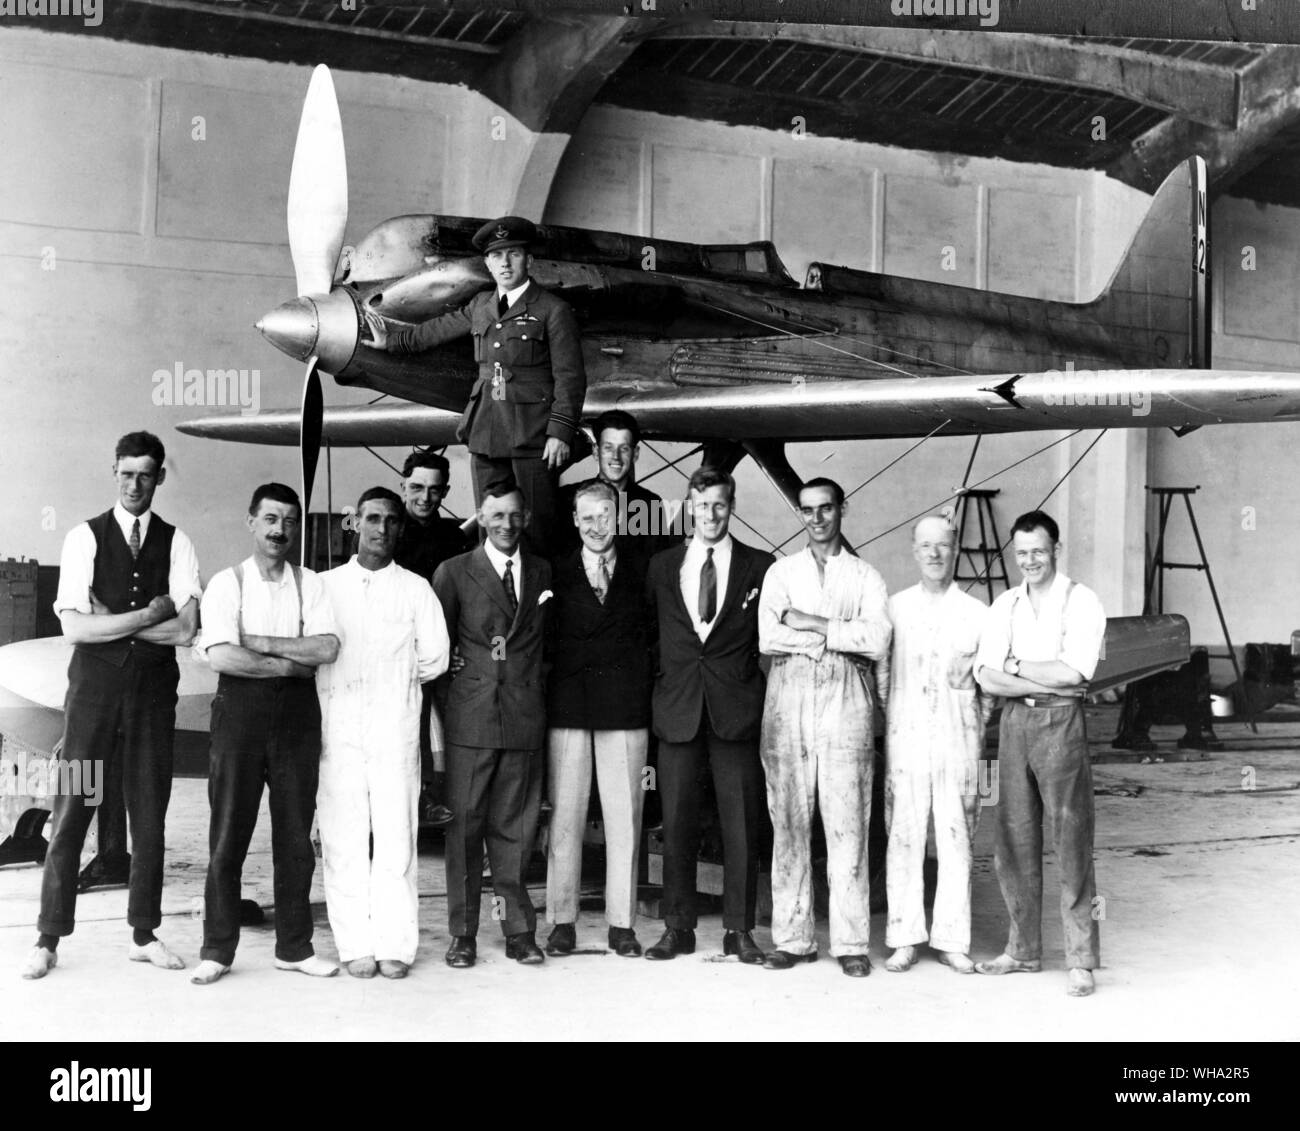 Die Supermarine Teil der britischen Mannschaft für die 1927 Schneider Trophy mit der Supermarine S 5. R. J. Mitchell, der Chefdesigner von allen Schneider Trophy Flugzeuge und der Prototyp Spitfire, ist 5. Von der in der vorderen Reihe links.. Flight-Lieutenant Webster, Gewinner des 1927 Trophäe, steht auf der Flugzeuge. Stockfoto